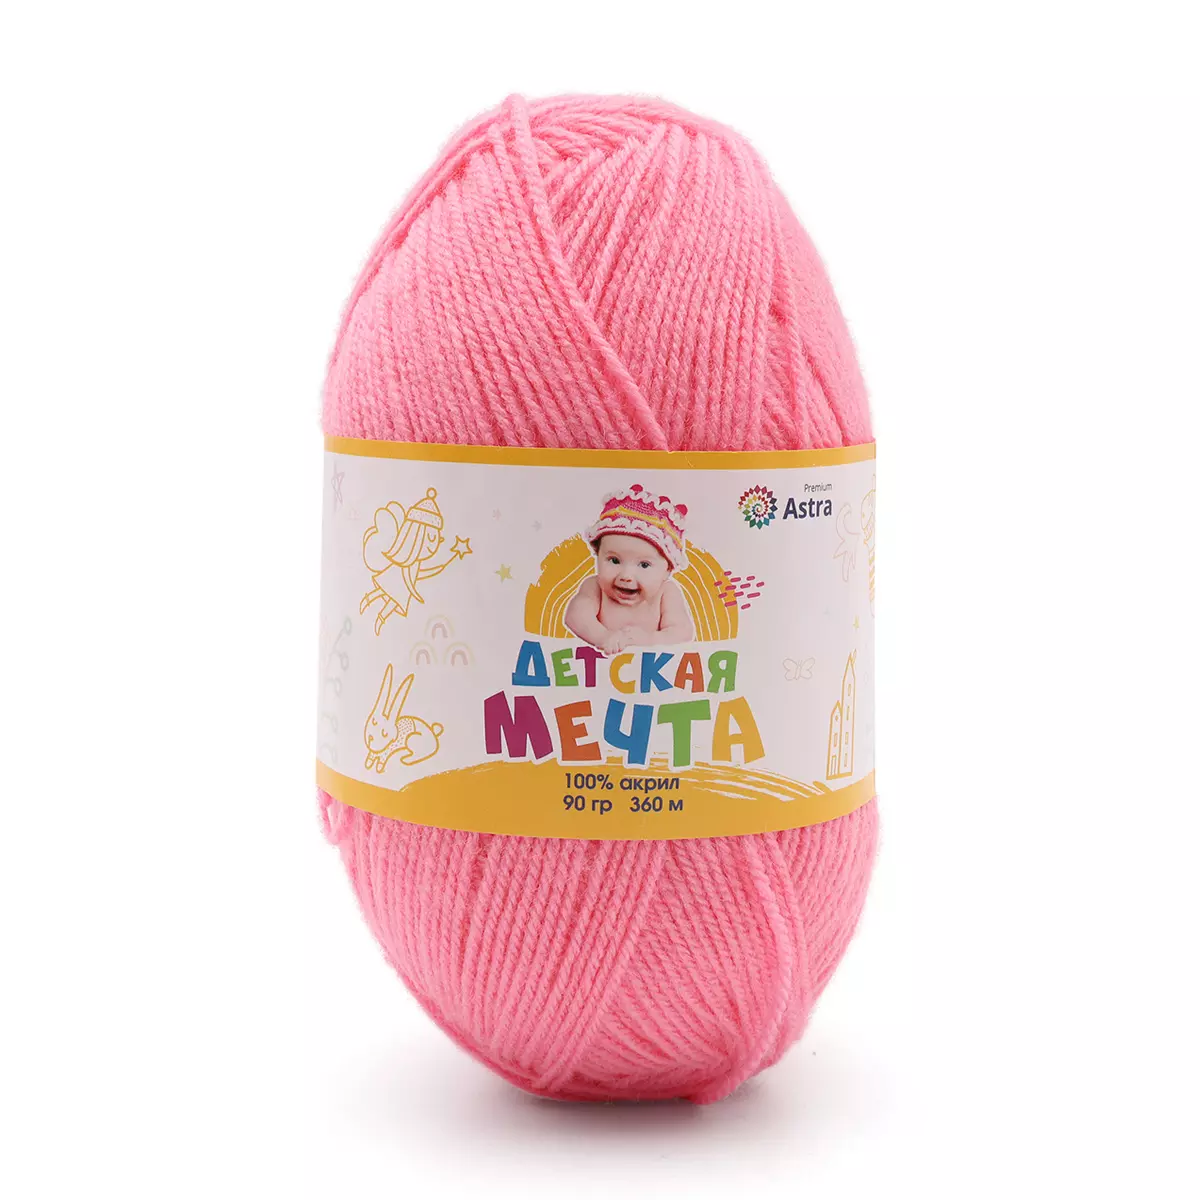 Пряжа Astra Premium 'Детская Мечта' 90гр 360м (100% акрил) ярко-розовый